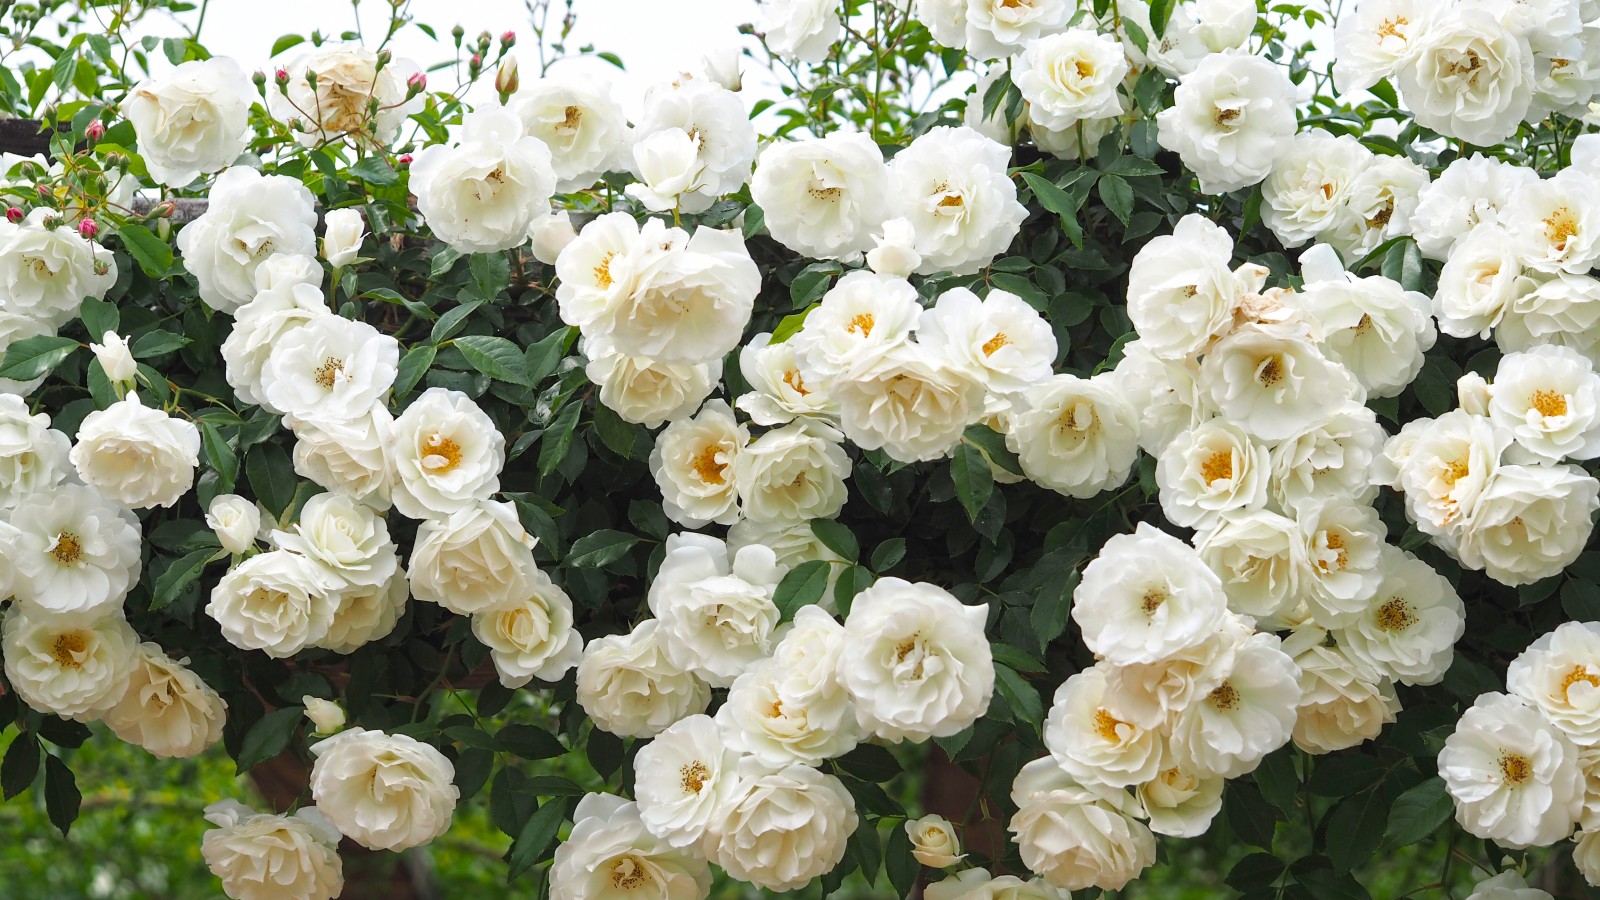 mawar, Mawar putih, mawar Bush